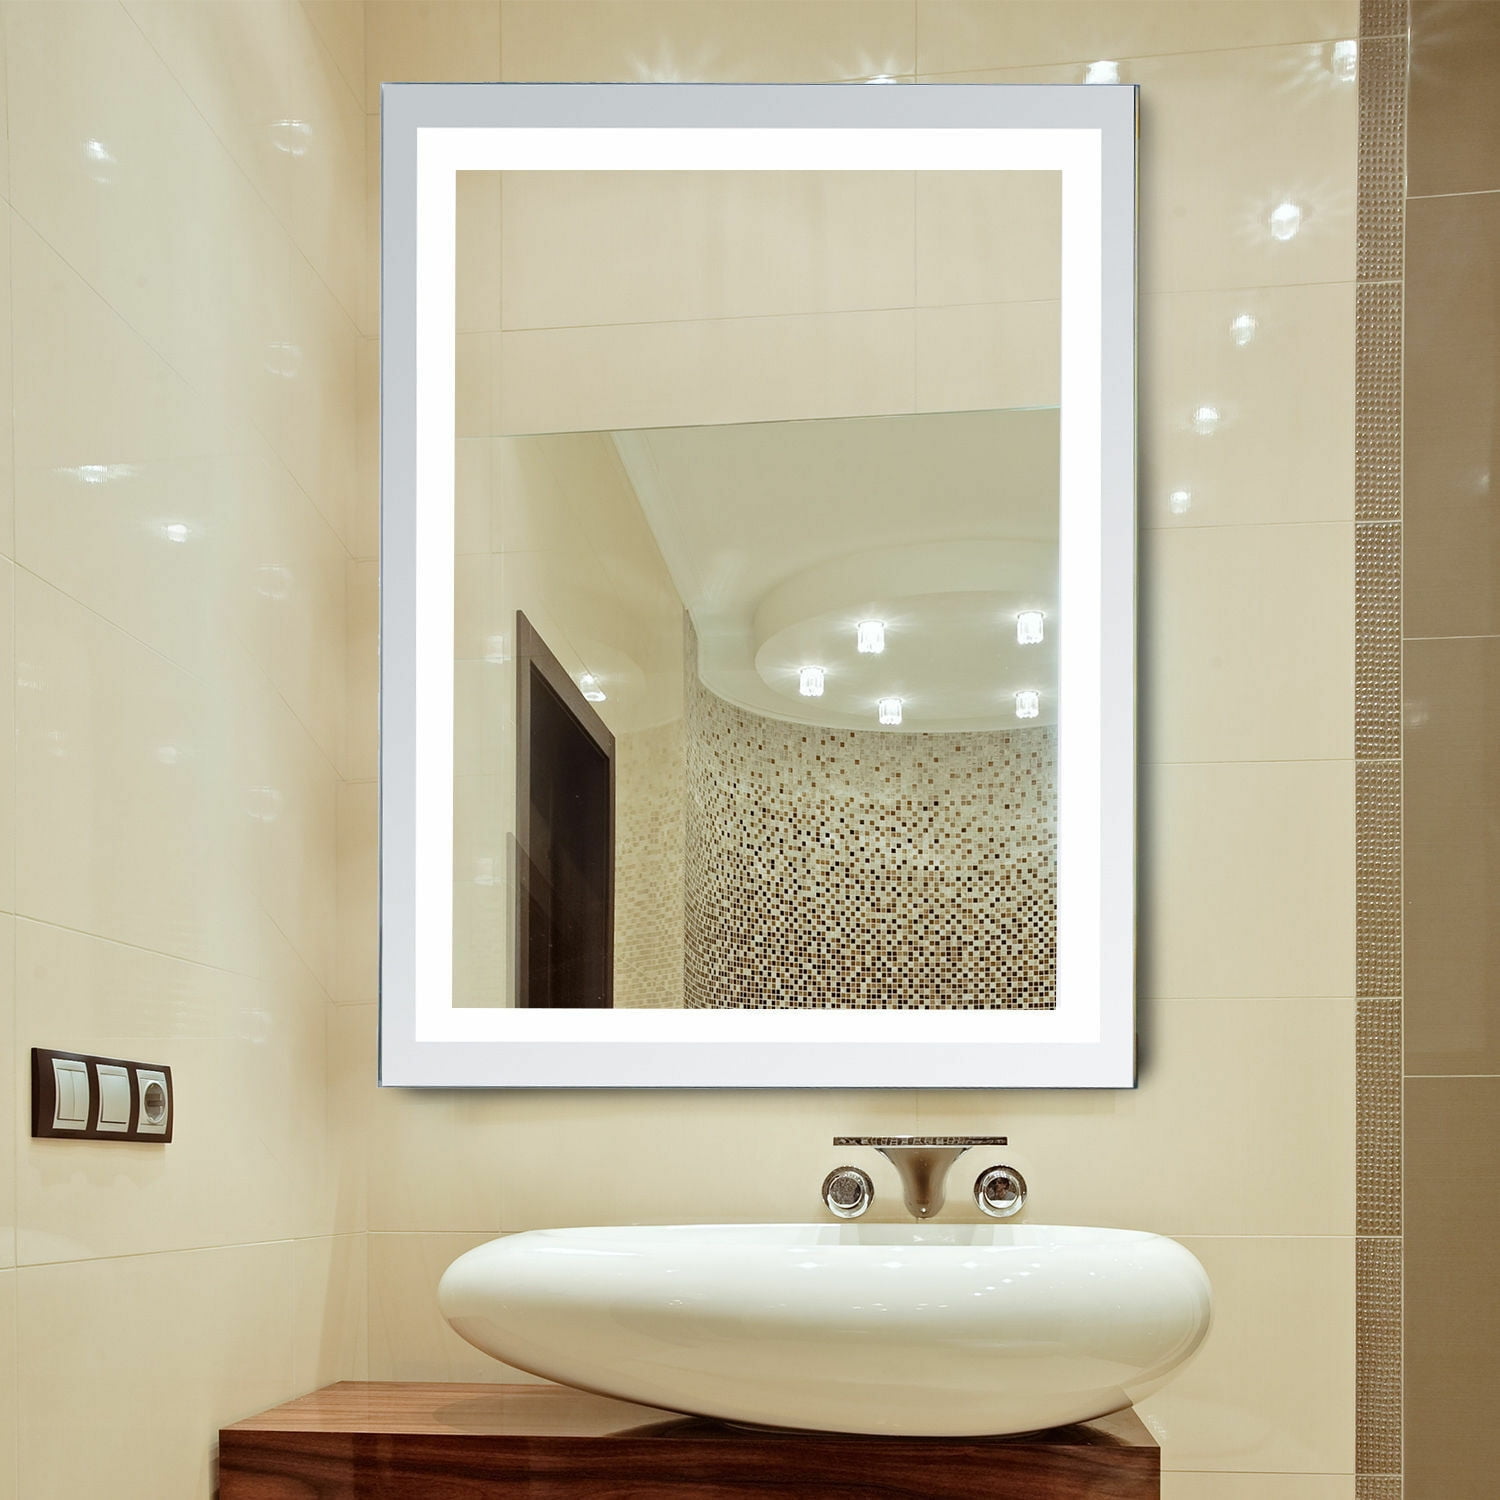 Led Illuminated Bathroom Wall Mirrors, Vanity Mirror Bathroom Makeup